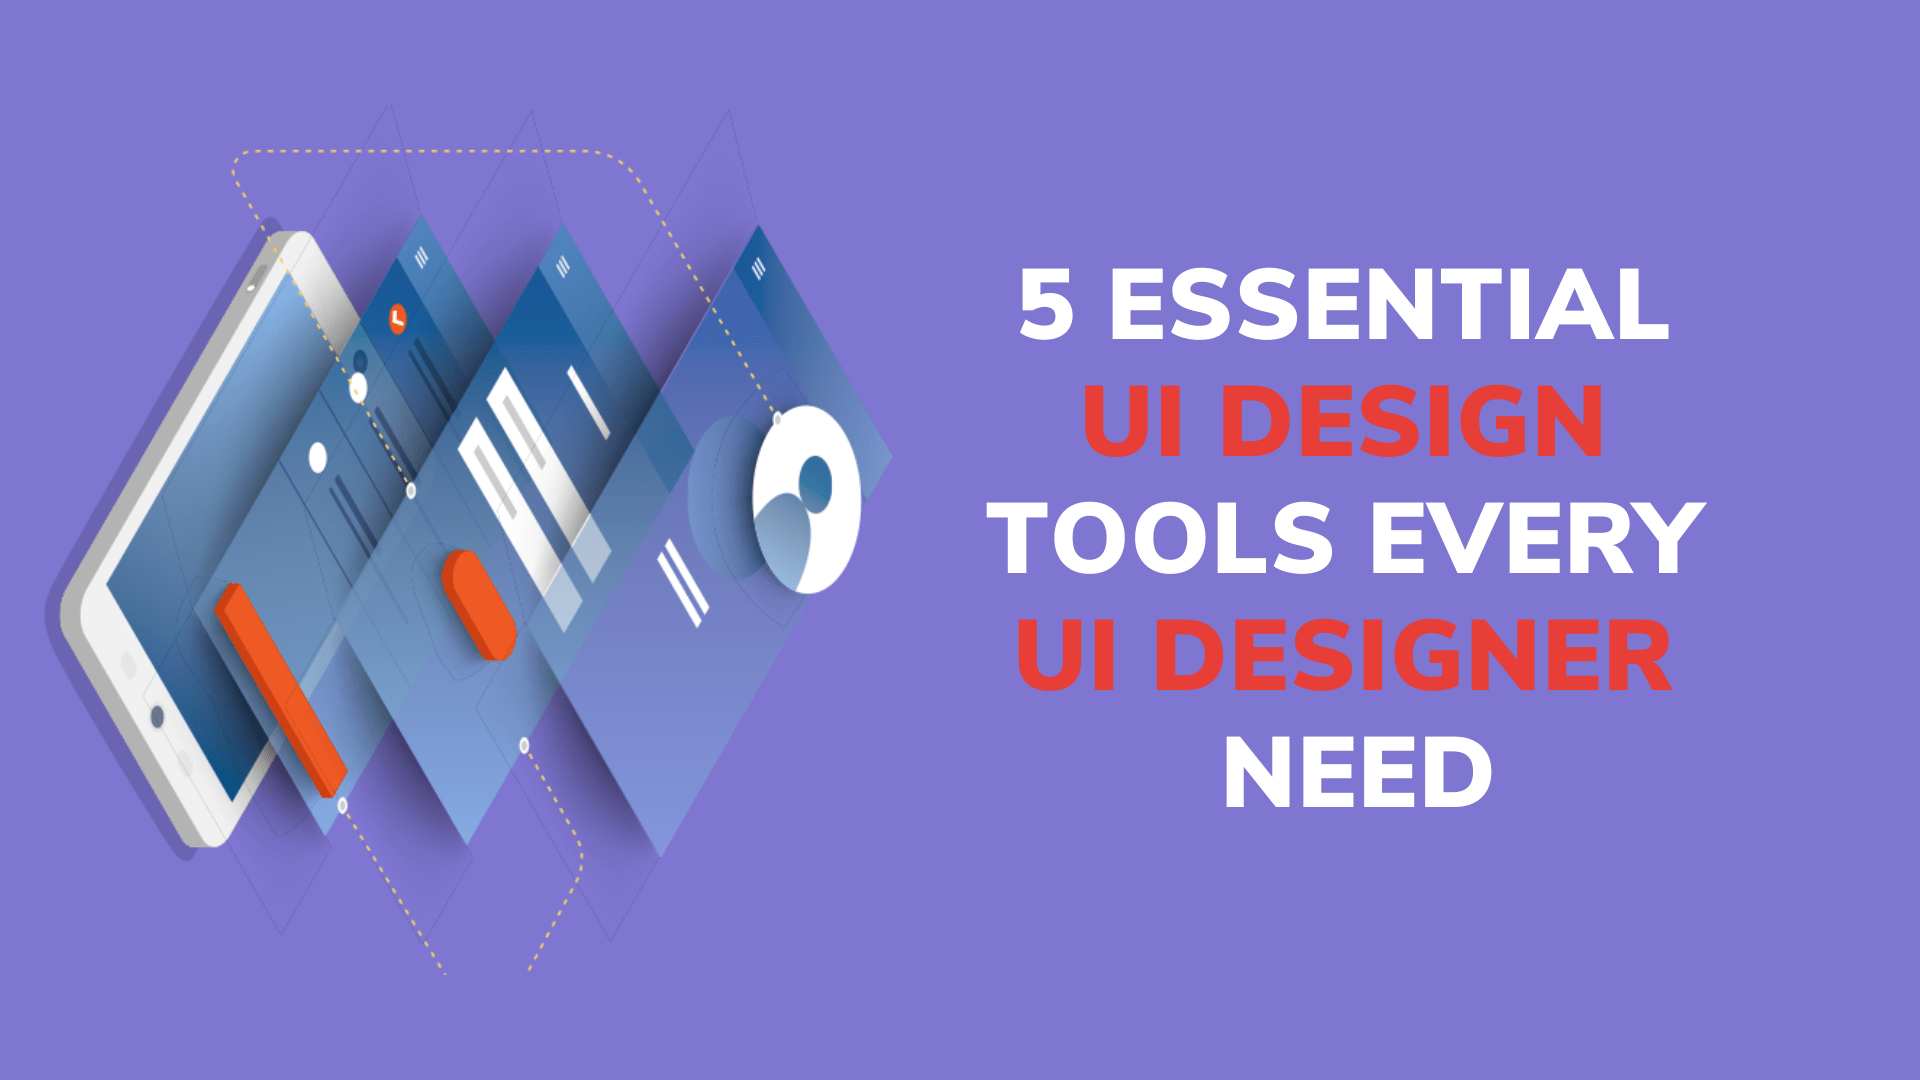 5 Essential UI Design Tools Every UI Designer Need